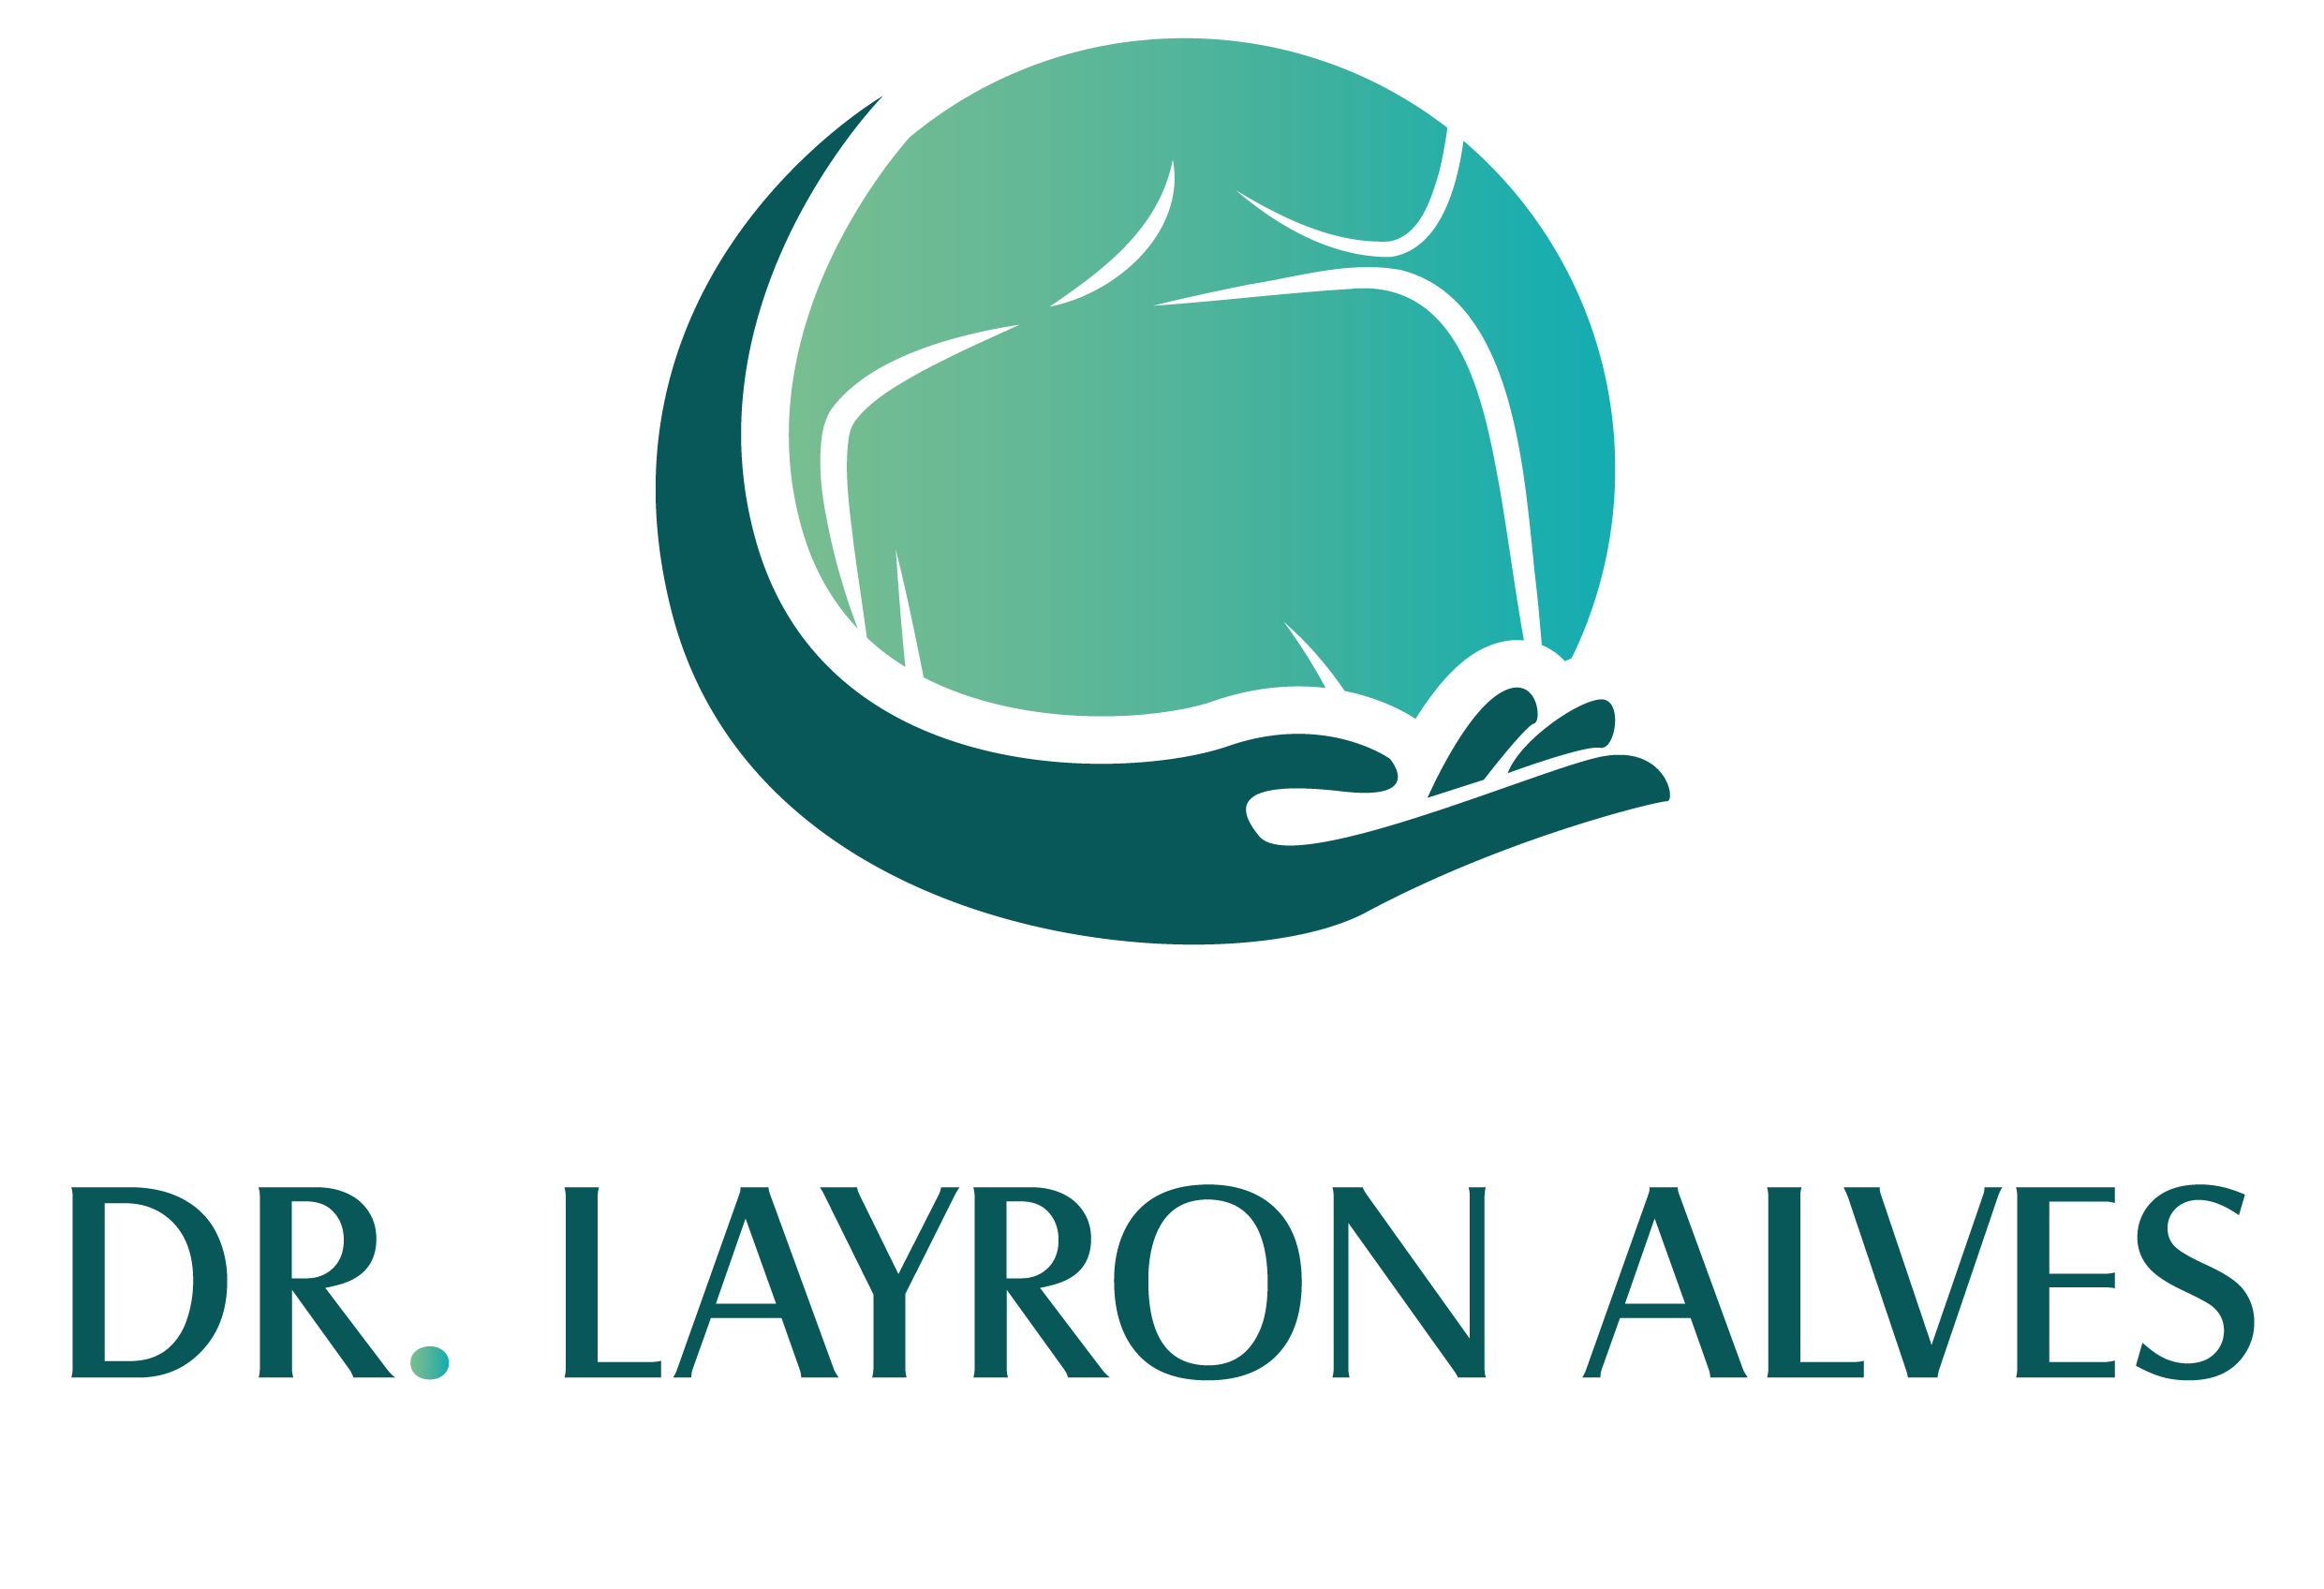 Dr. Layron Alves - Ortopedista de Ombro e Cotovelo em SP